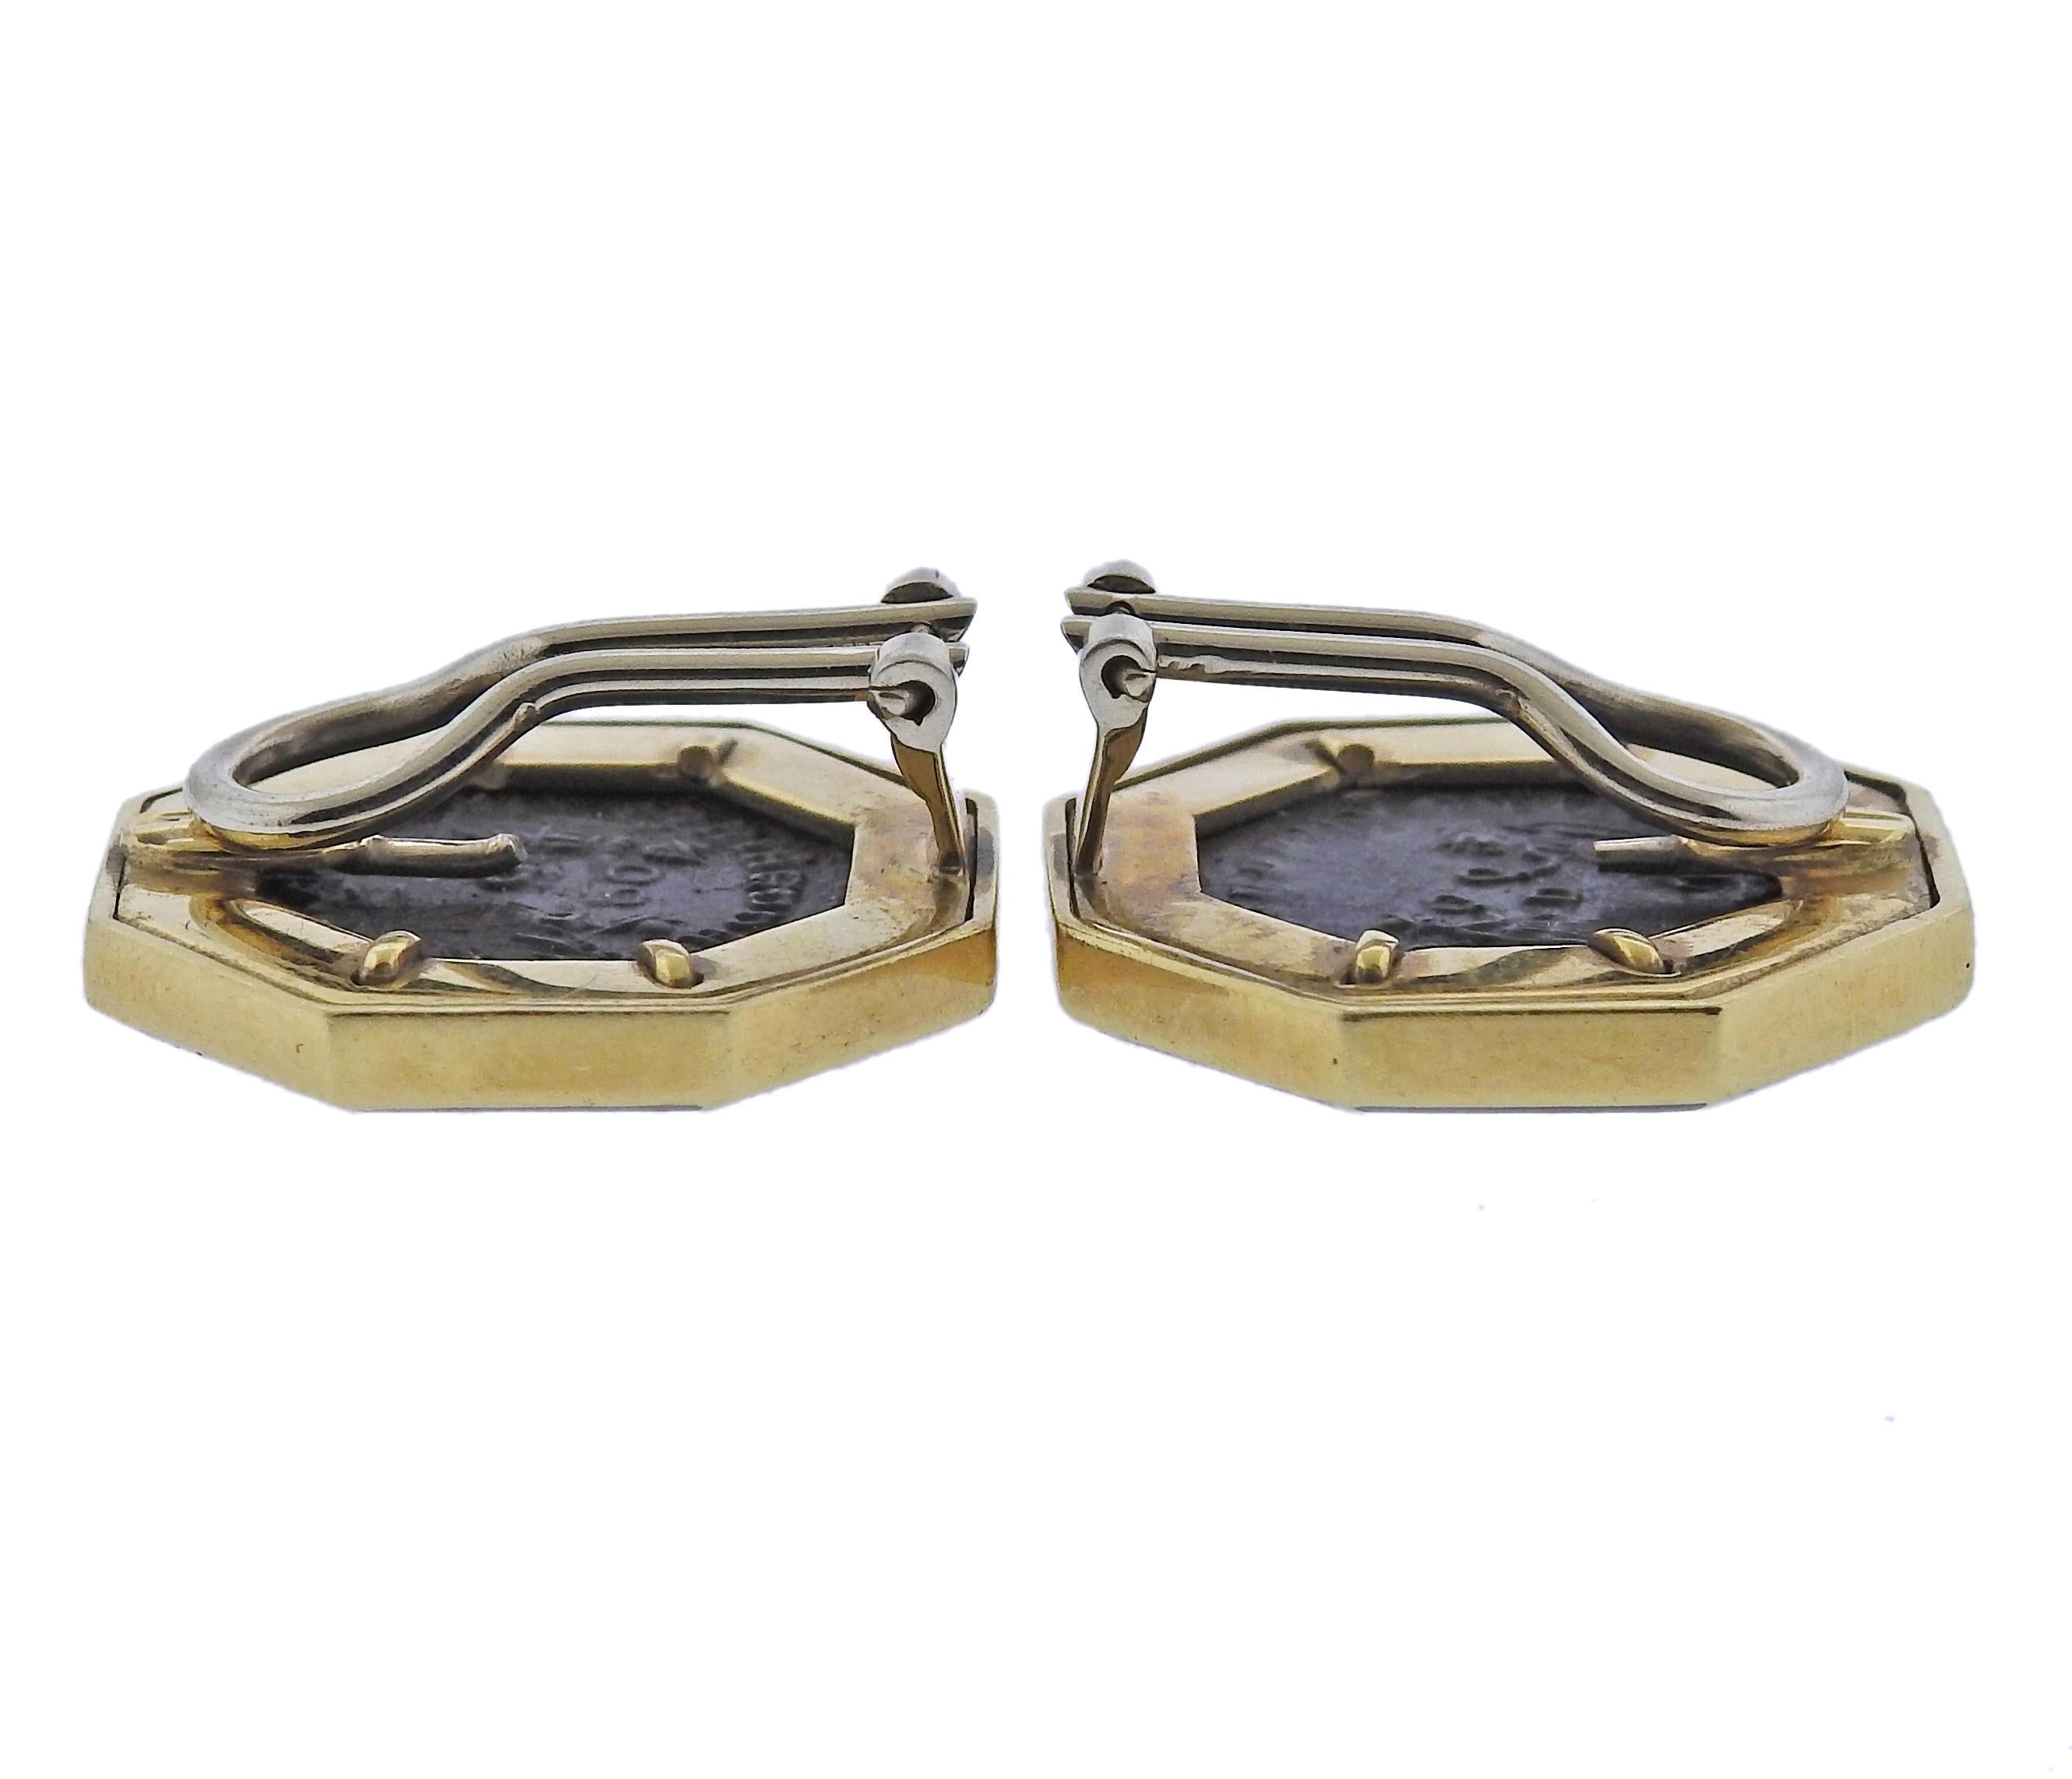 Paar Ohrringe aus 18 Karat Gold, mit Münzen in der Mitte, umgeben von ca. 0,34 ct in Diamanten und Emaille. Die Ohrringe sind 22 mm x 22 mm groß. Markiert: 750. Gewicht - 19,7 Gramm.